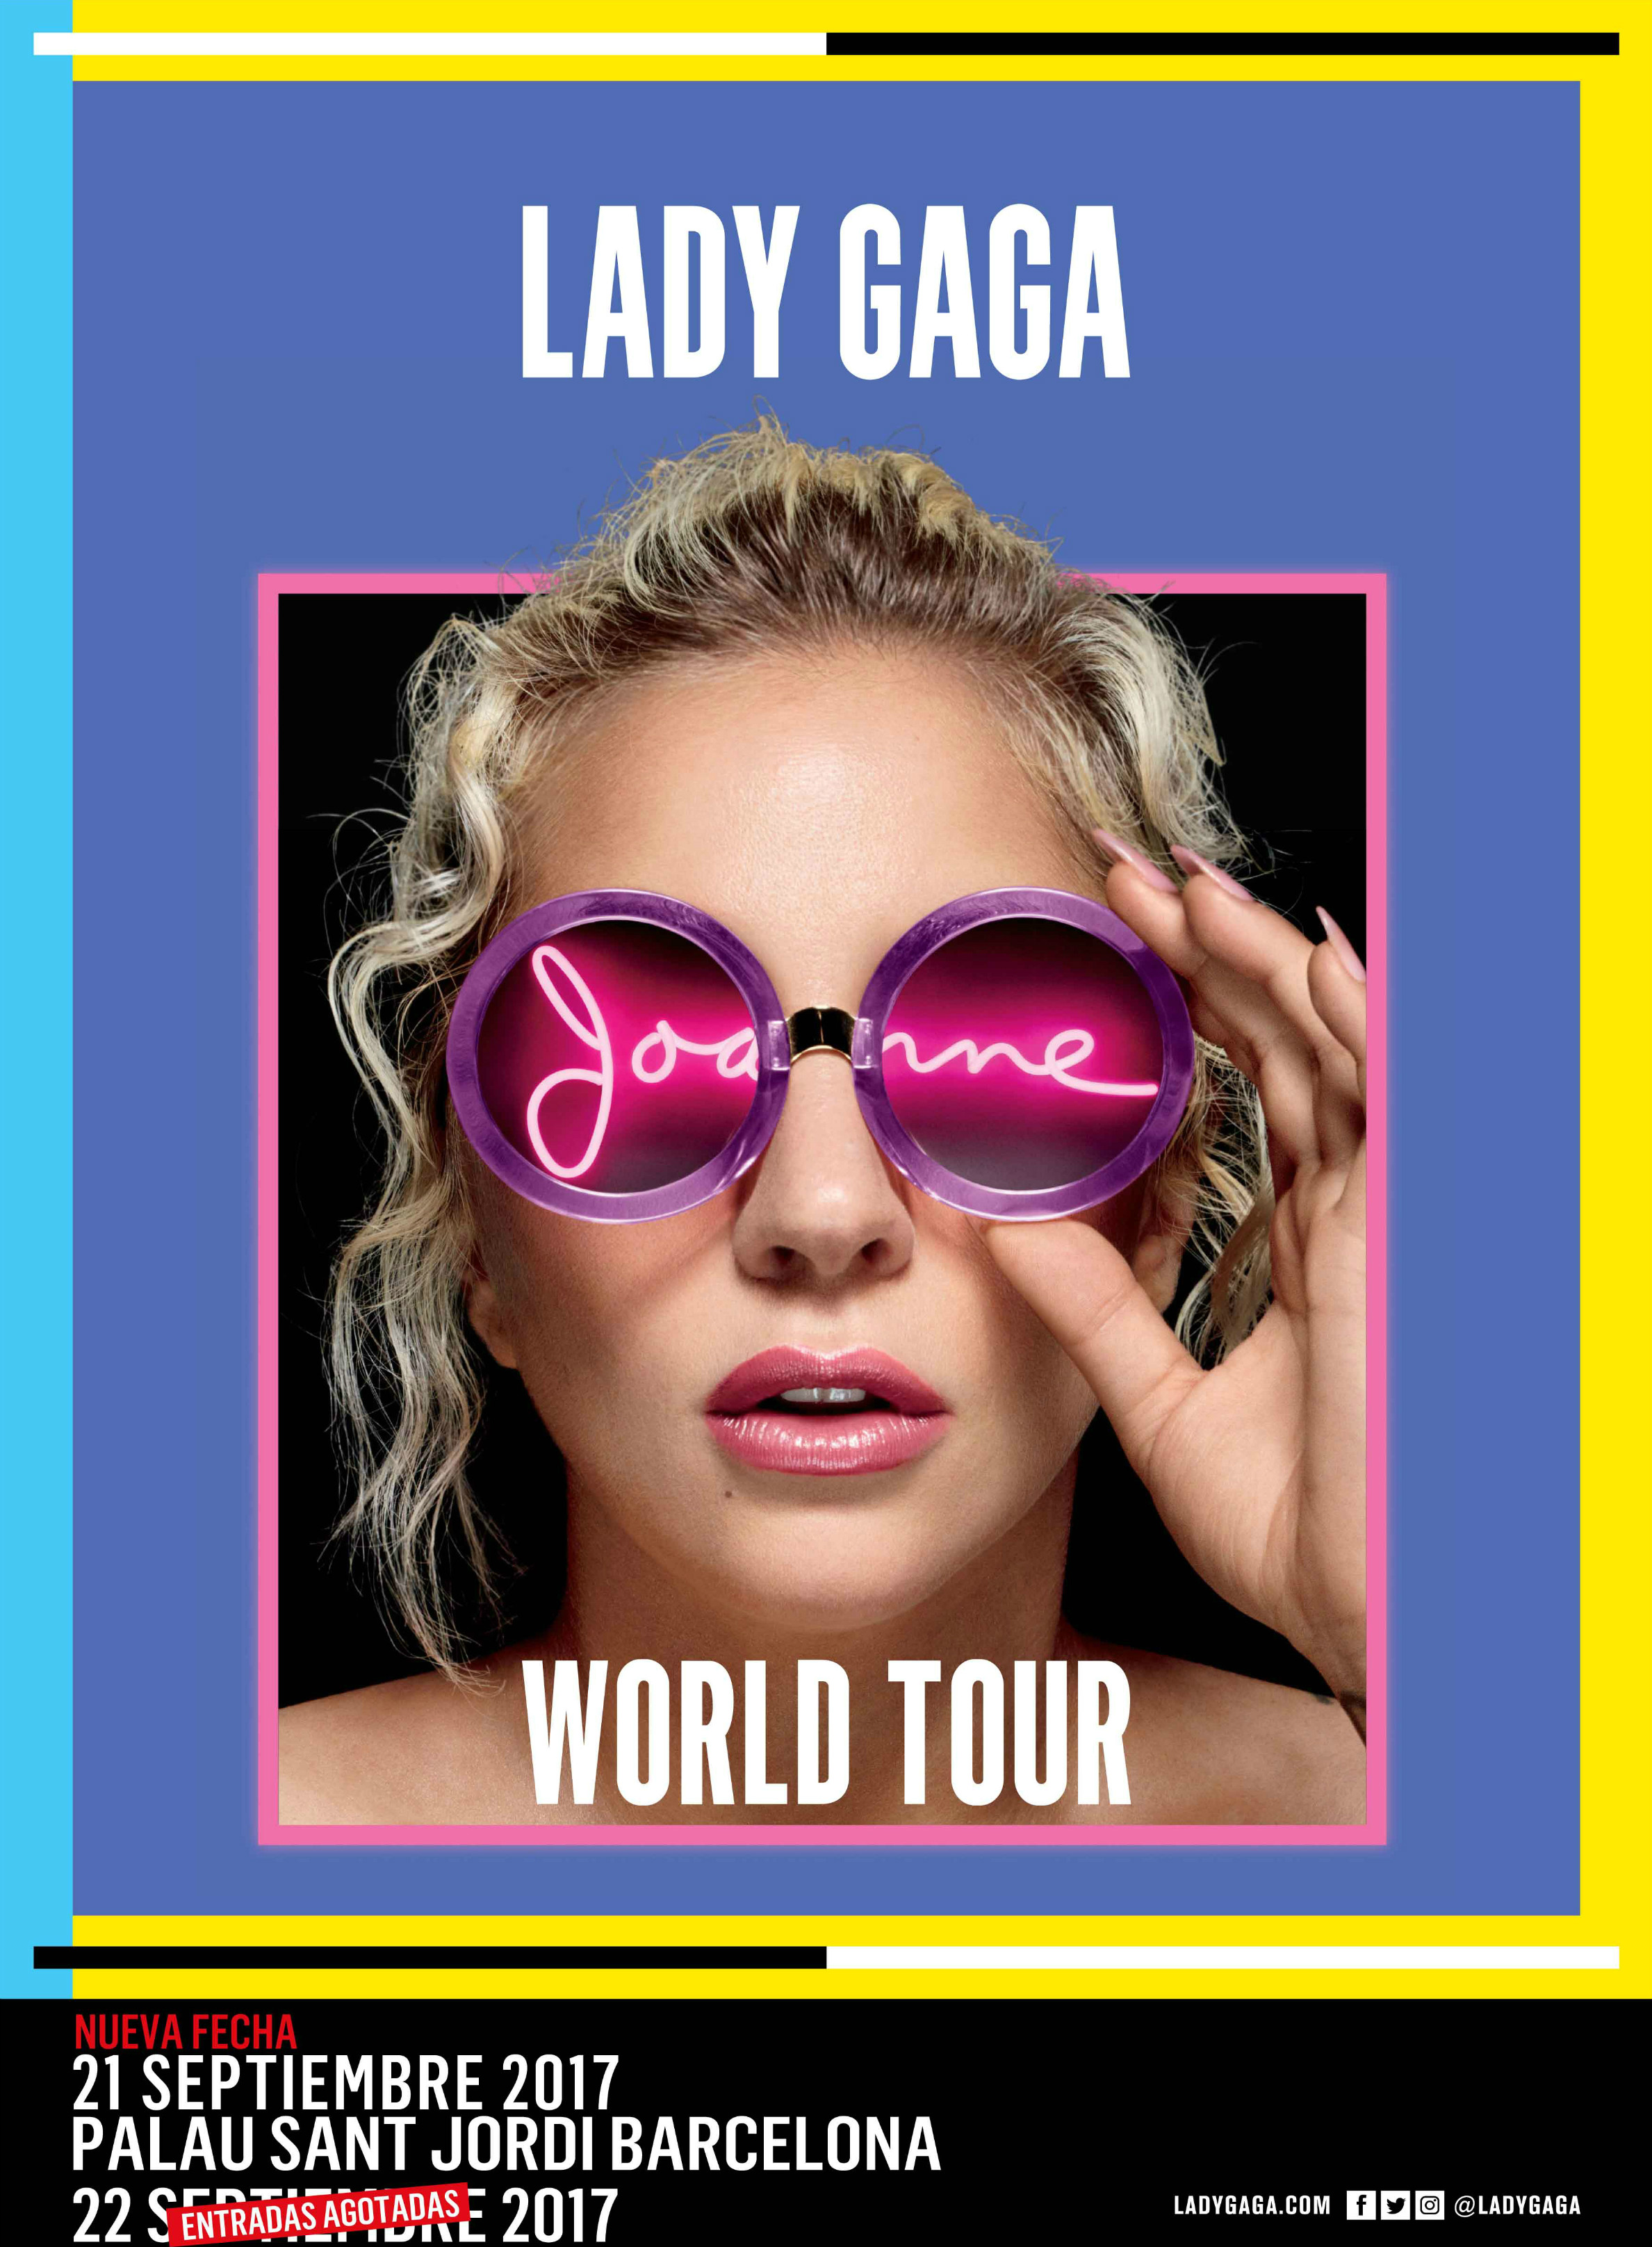 Lady Gaga - Joanne World Tour - Barcelona